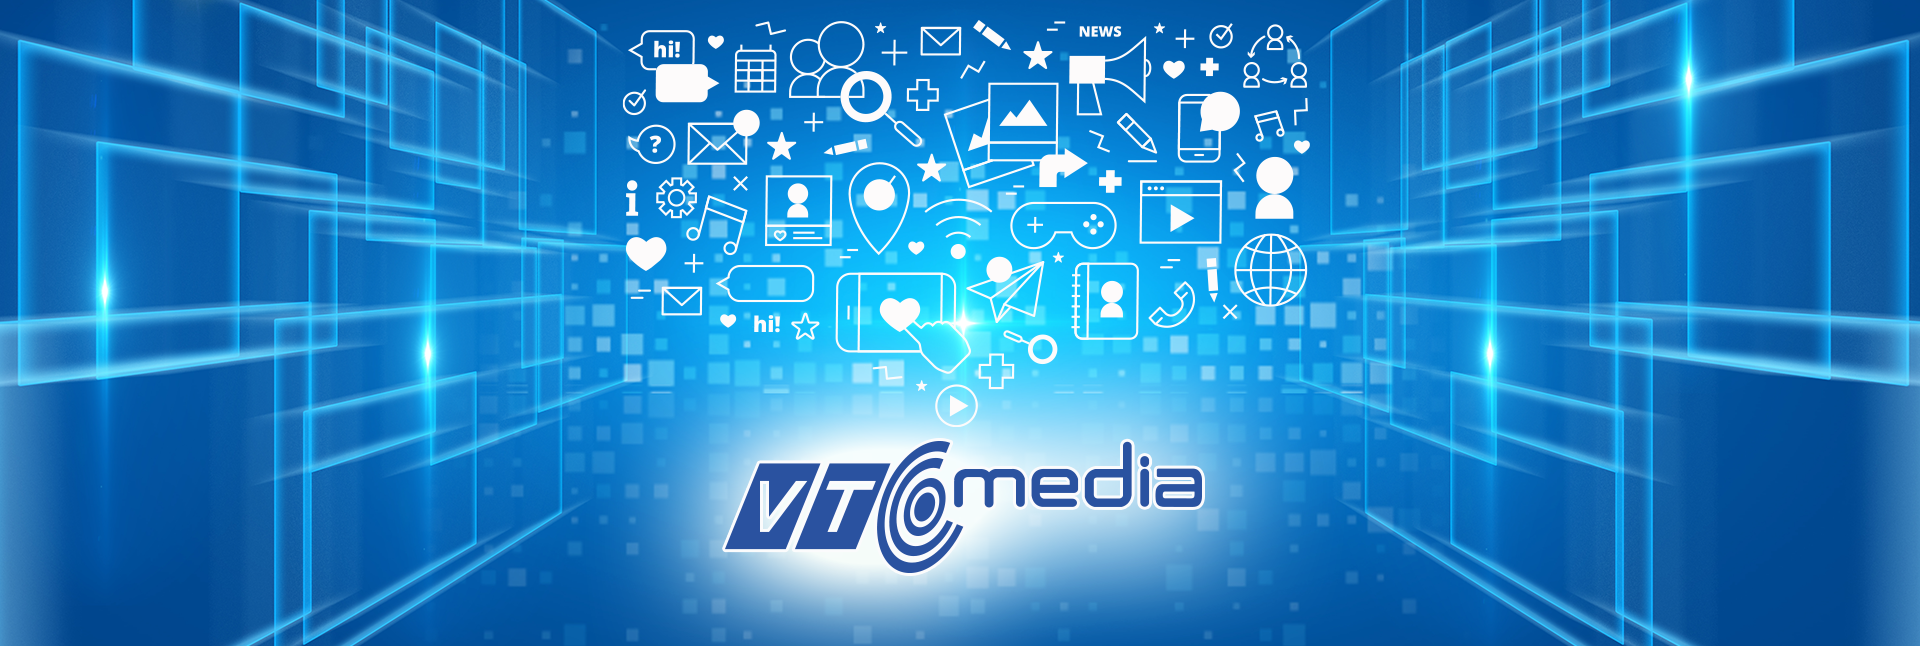 VTC Media